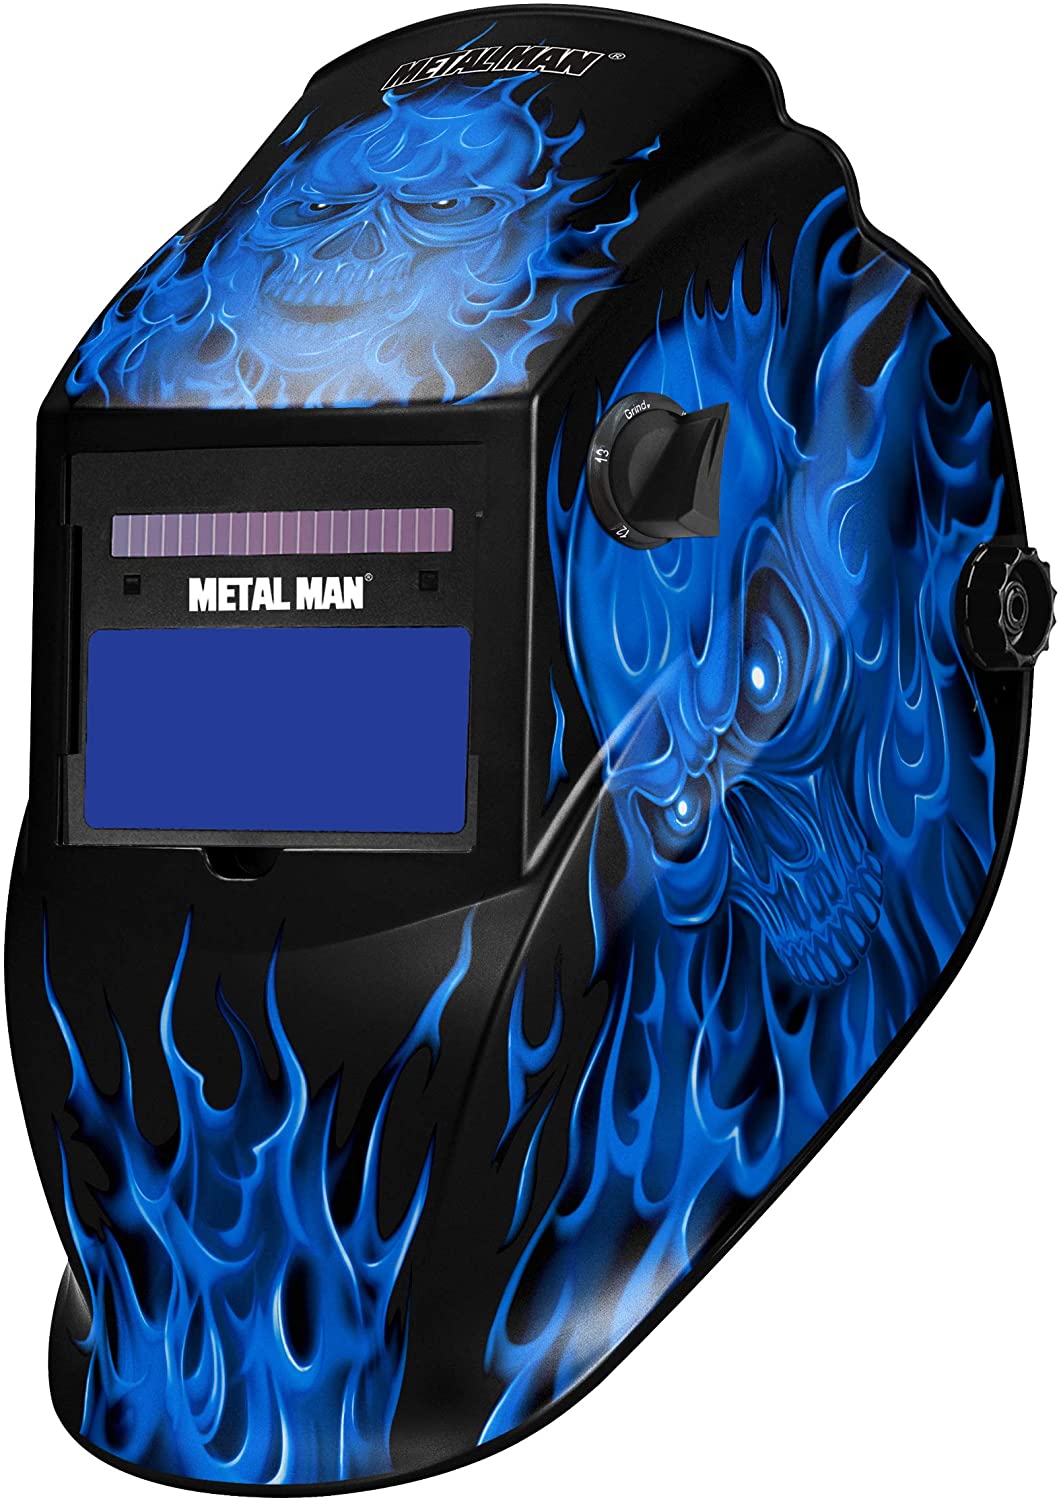 Auto Darkening Welders Helmet Mask Welding Grinding Blue & 5 x Lens Cover 